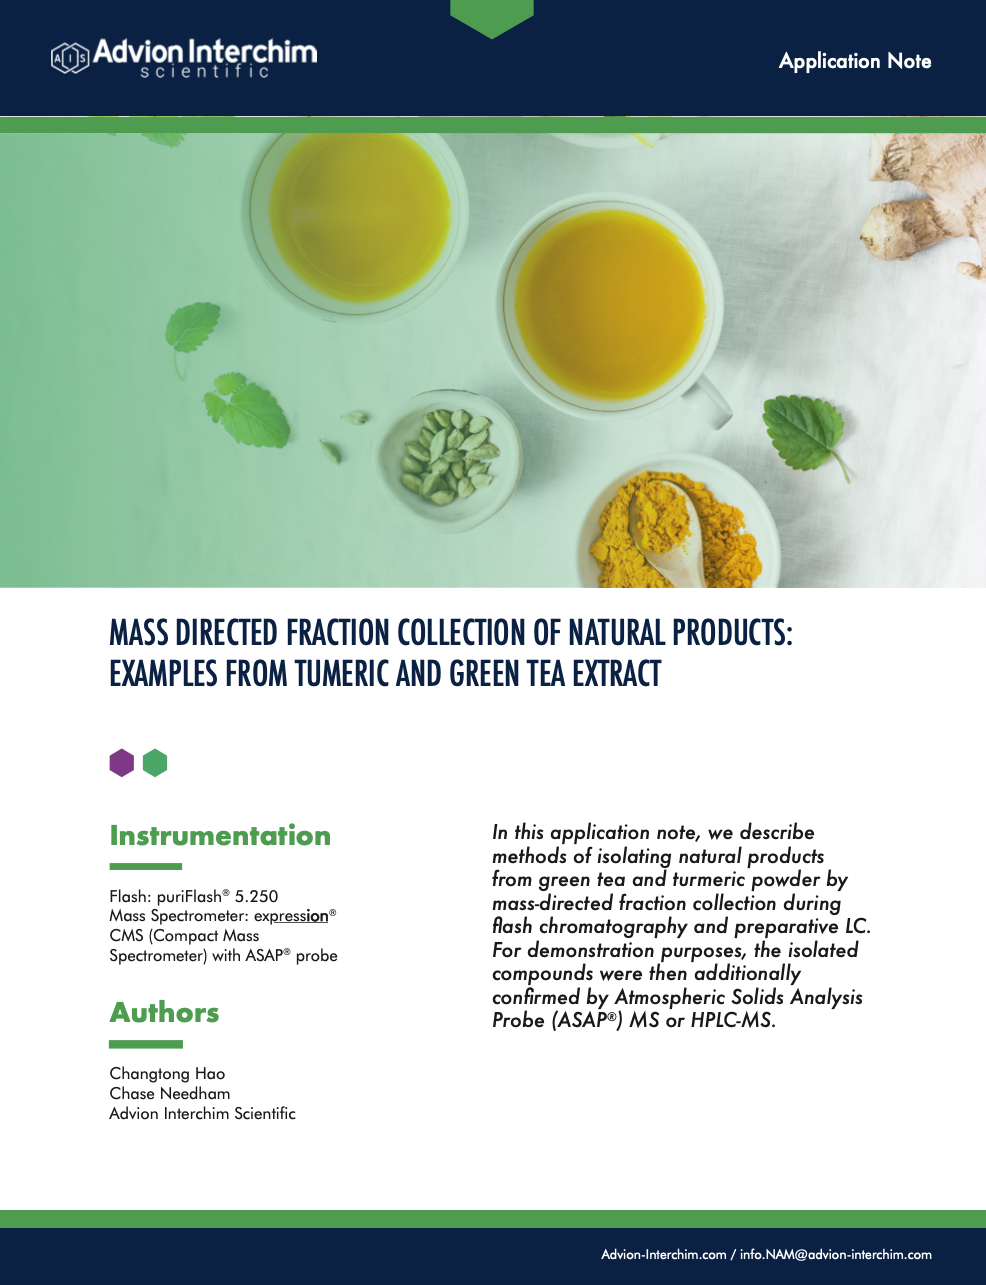 Colección de fracciones dirigidas a la masa de productos naturales: ejemplos de extracto de cúrcuma y té verde